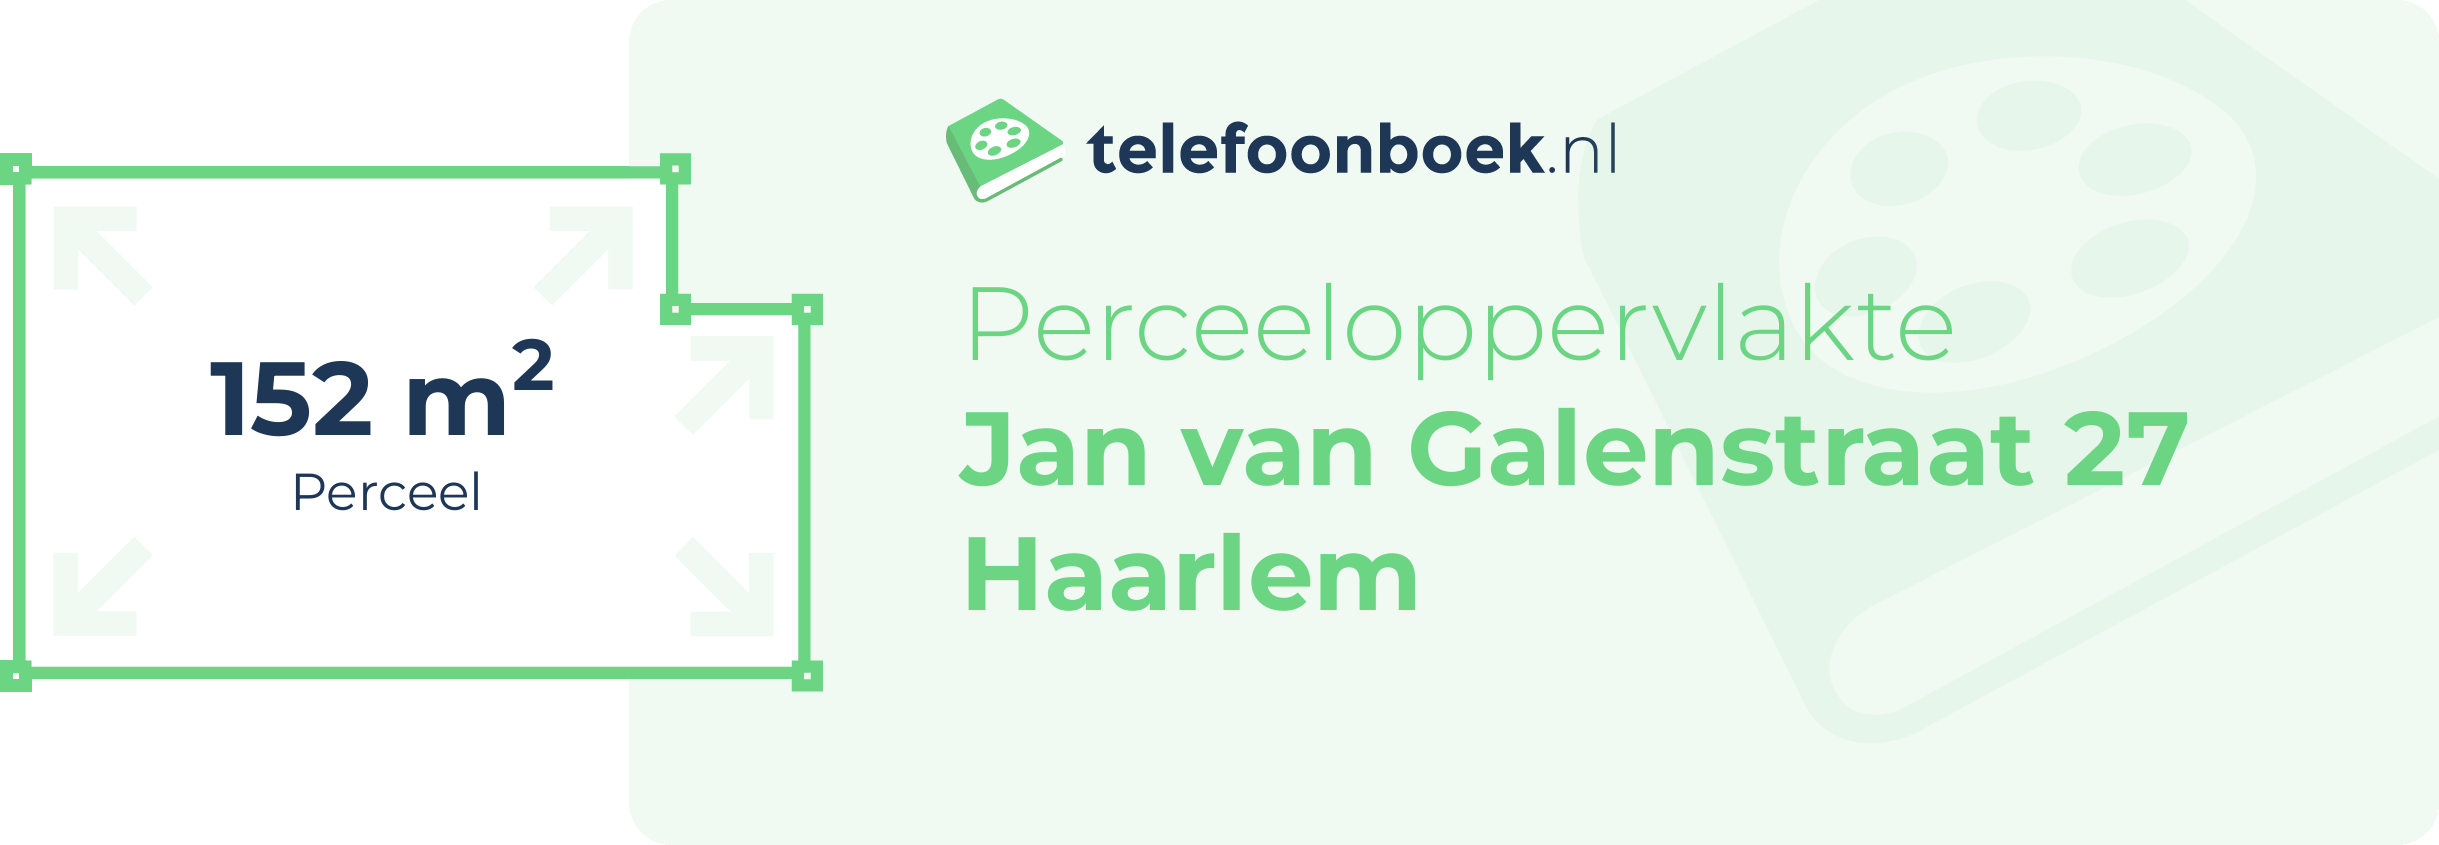 Perceeloppervlakte Jan Van Galenstraat 27 Haarlem